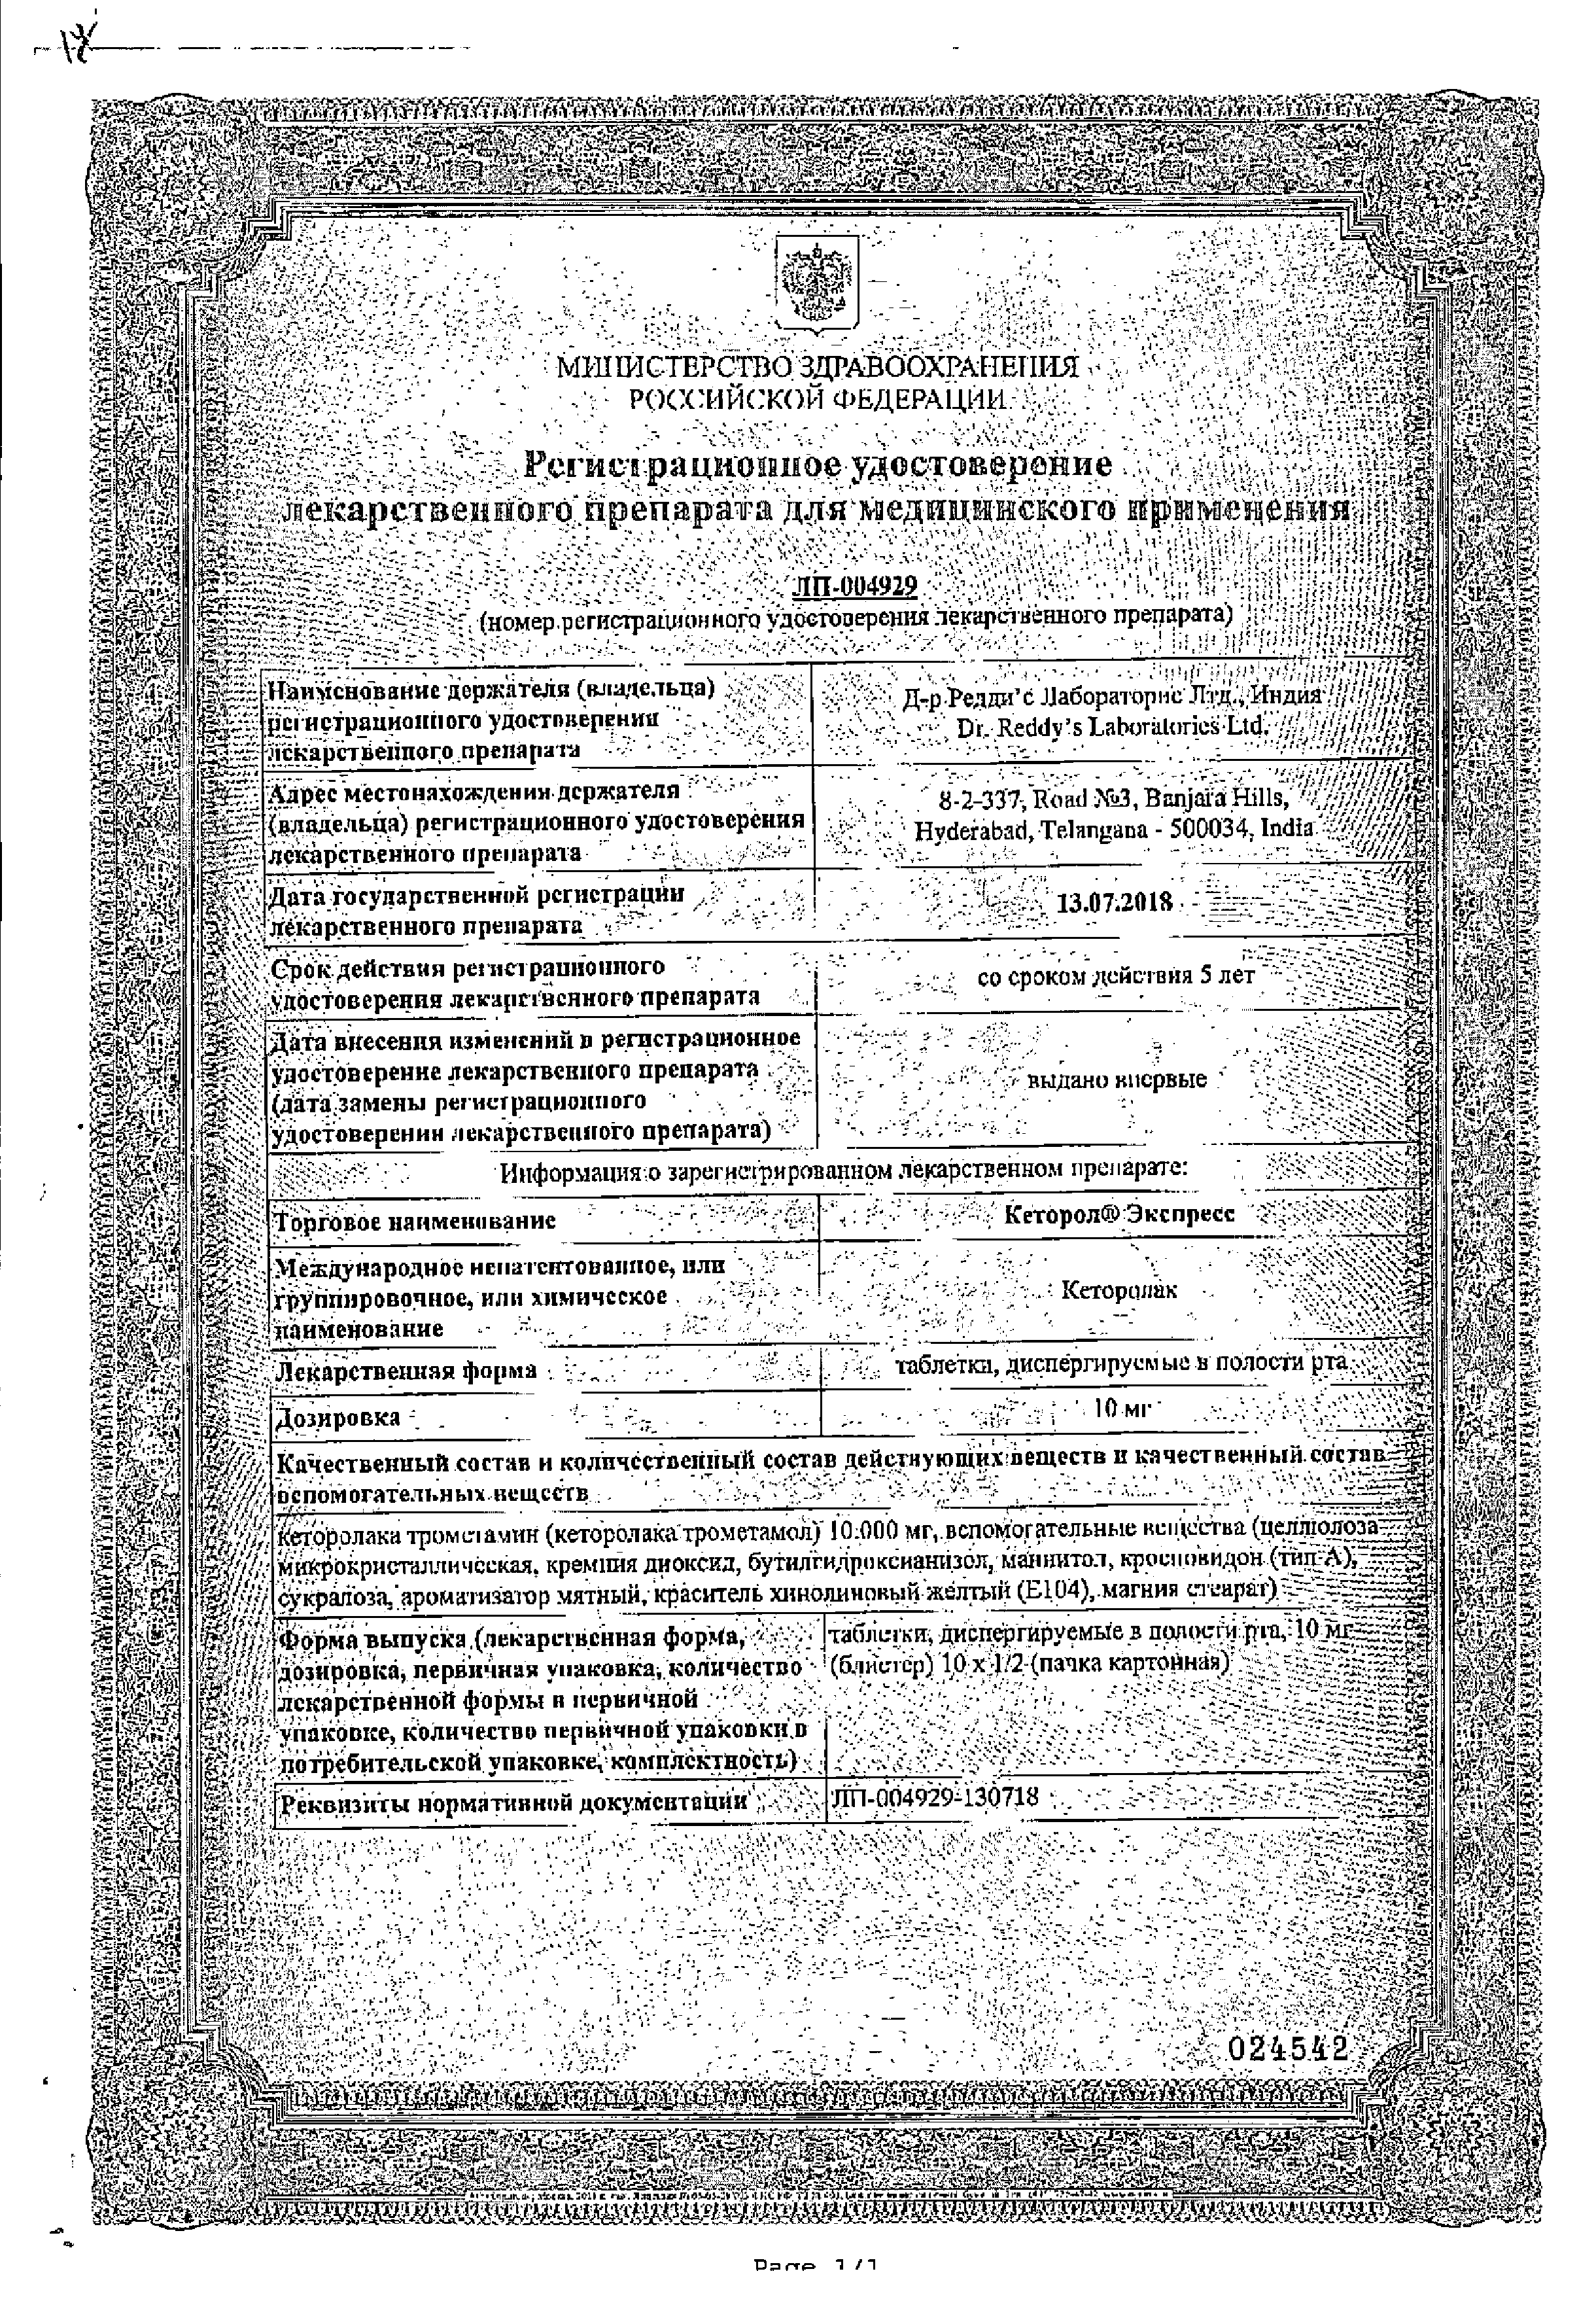 Кеторол Экспресс сертификат